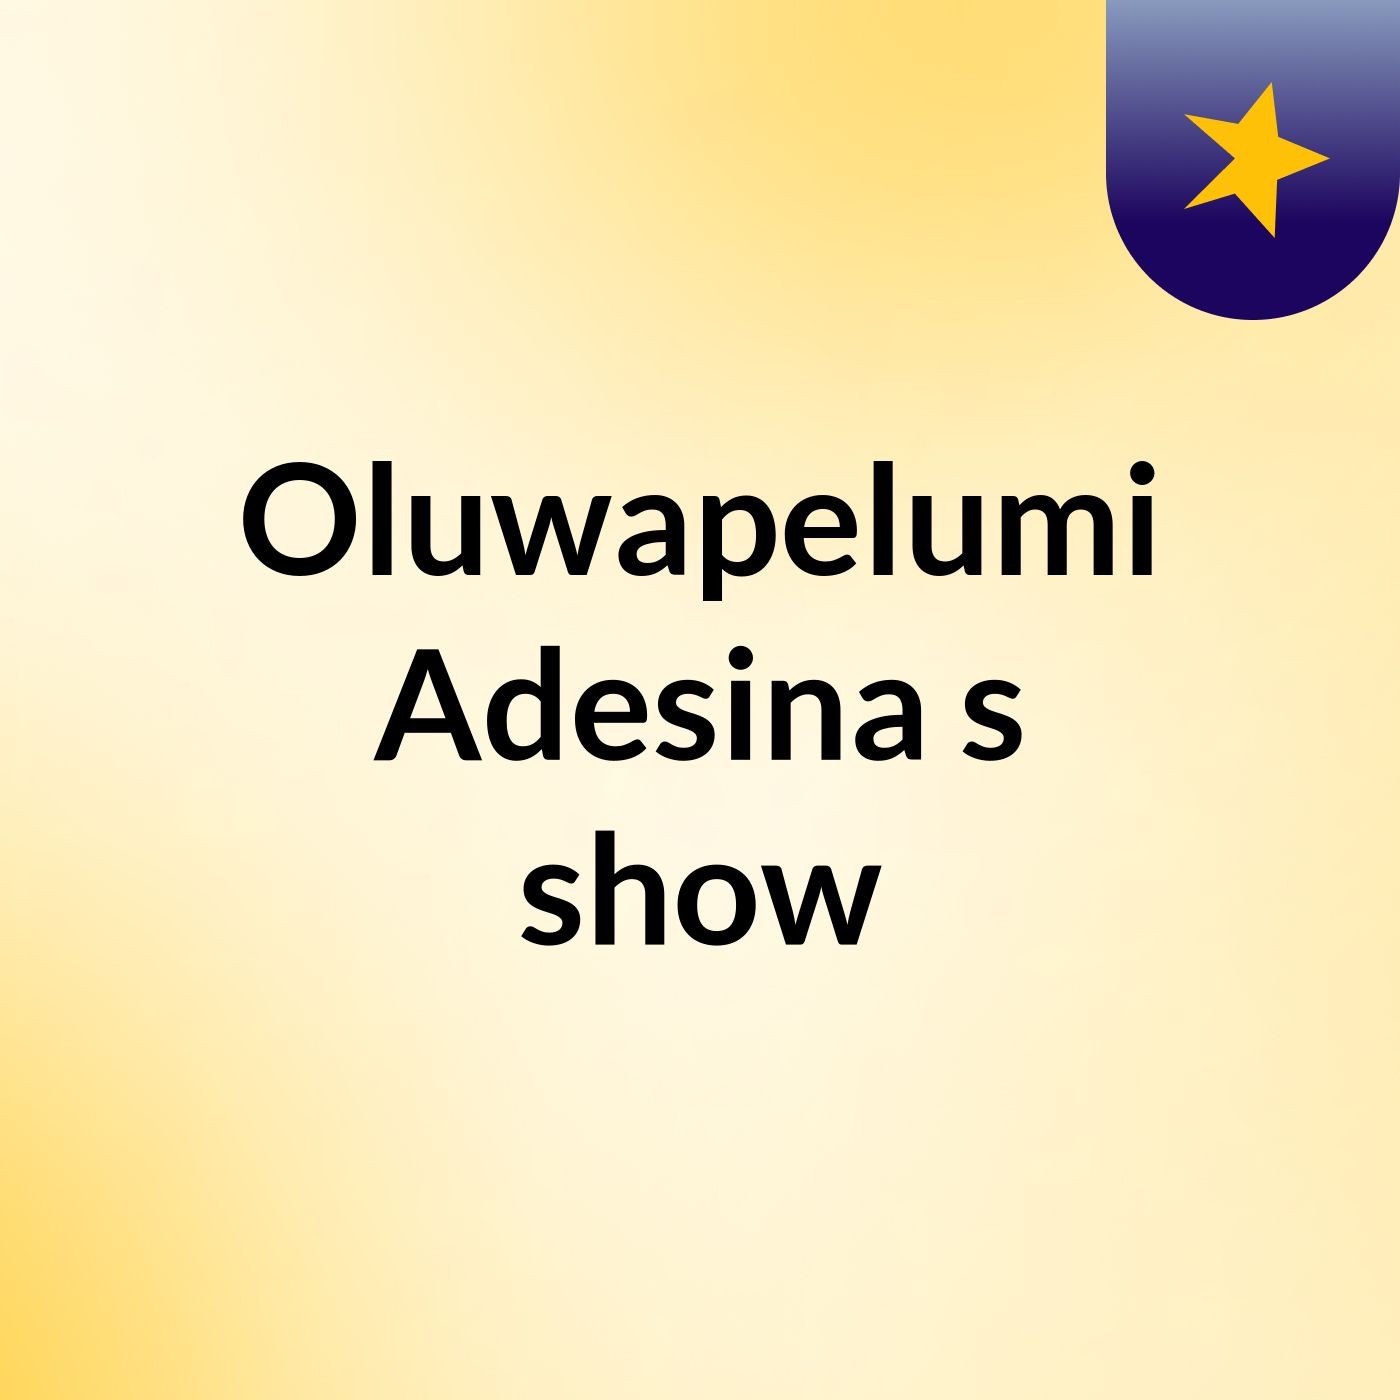 Oluwapelumi Adesina's show